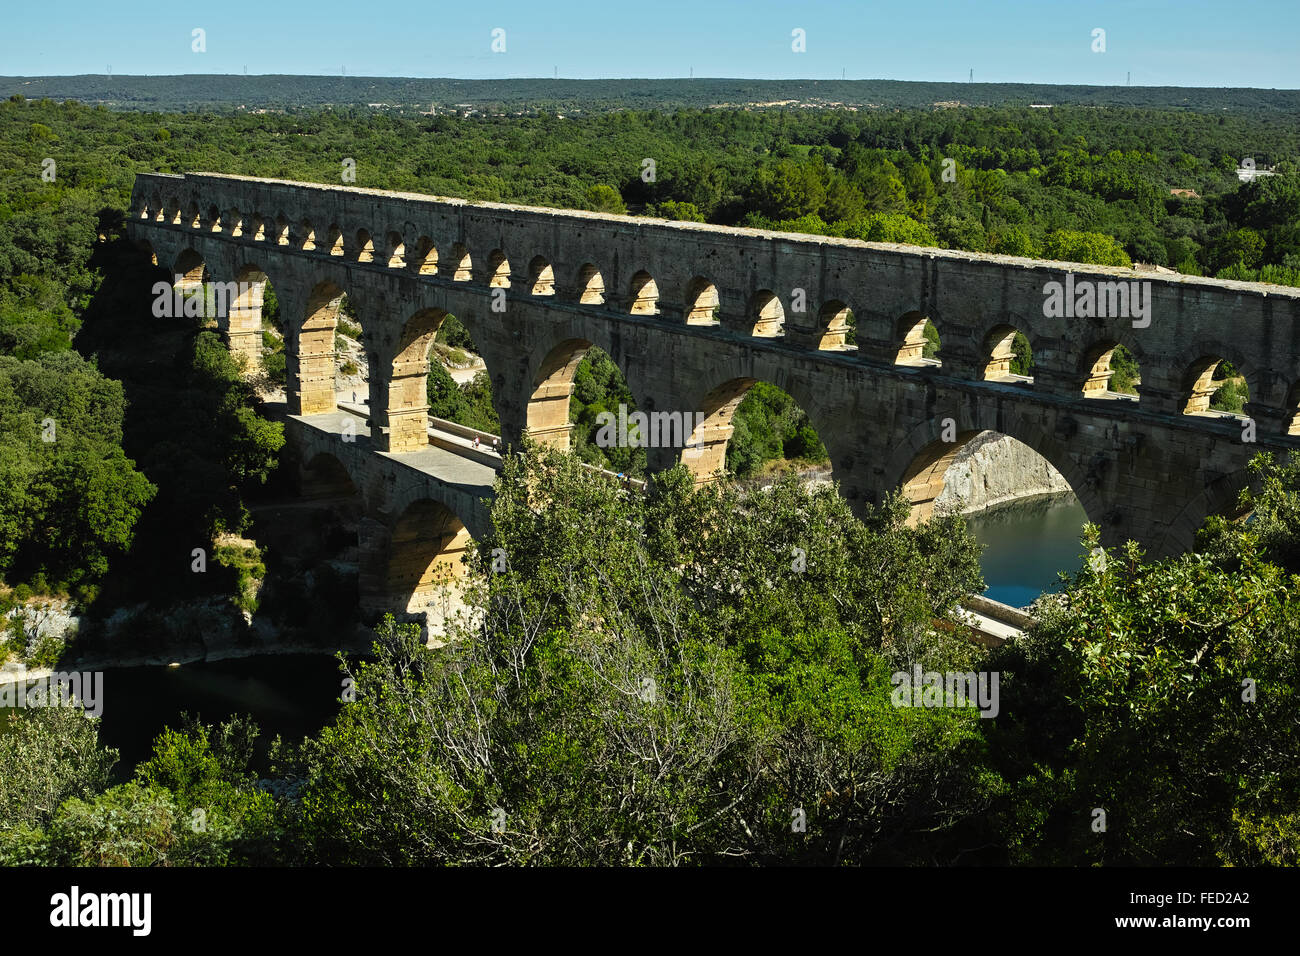 Pont du Gard (Gard-Brücke) ist ein altes römisches Aquädukt, das den Fluss Gardon in der Nähe von Remoulins, Südfrankreich, überquert. Stockfoto